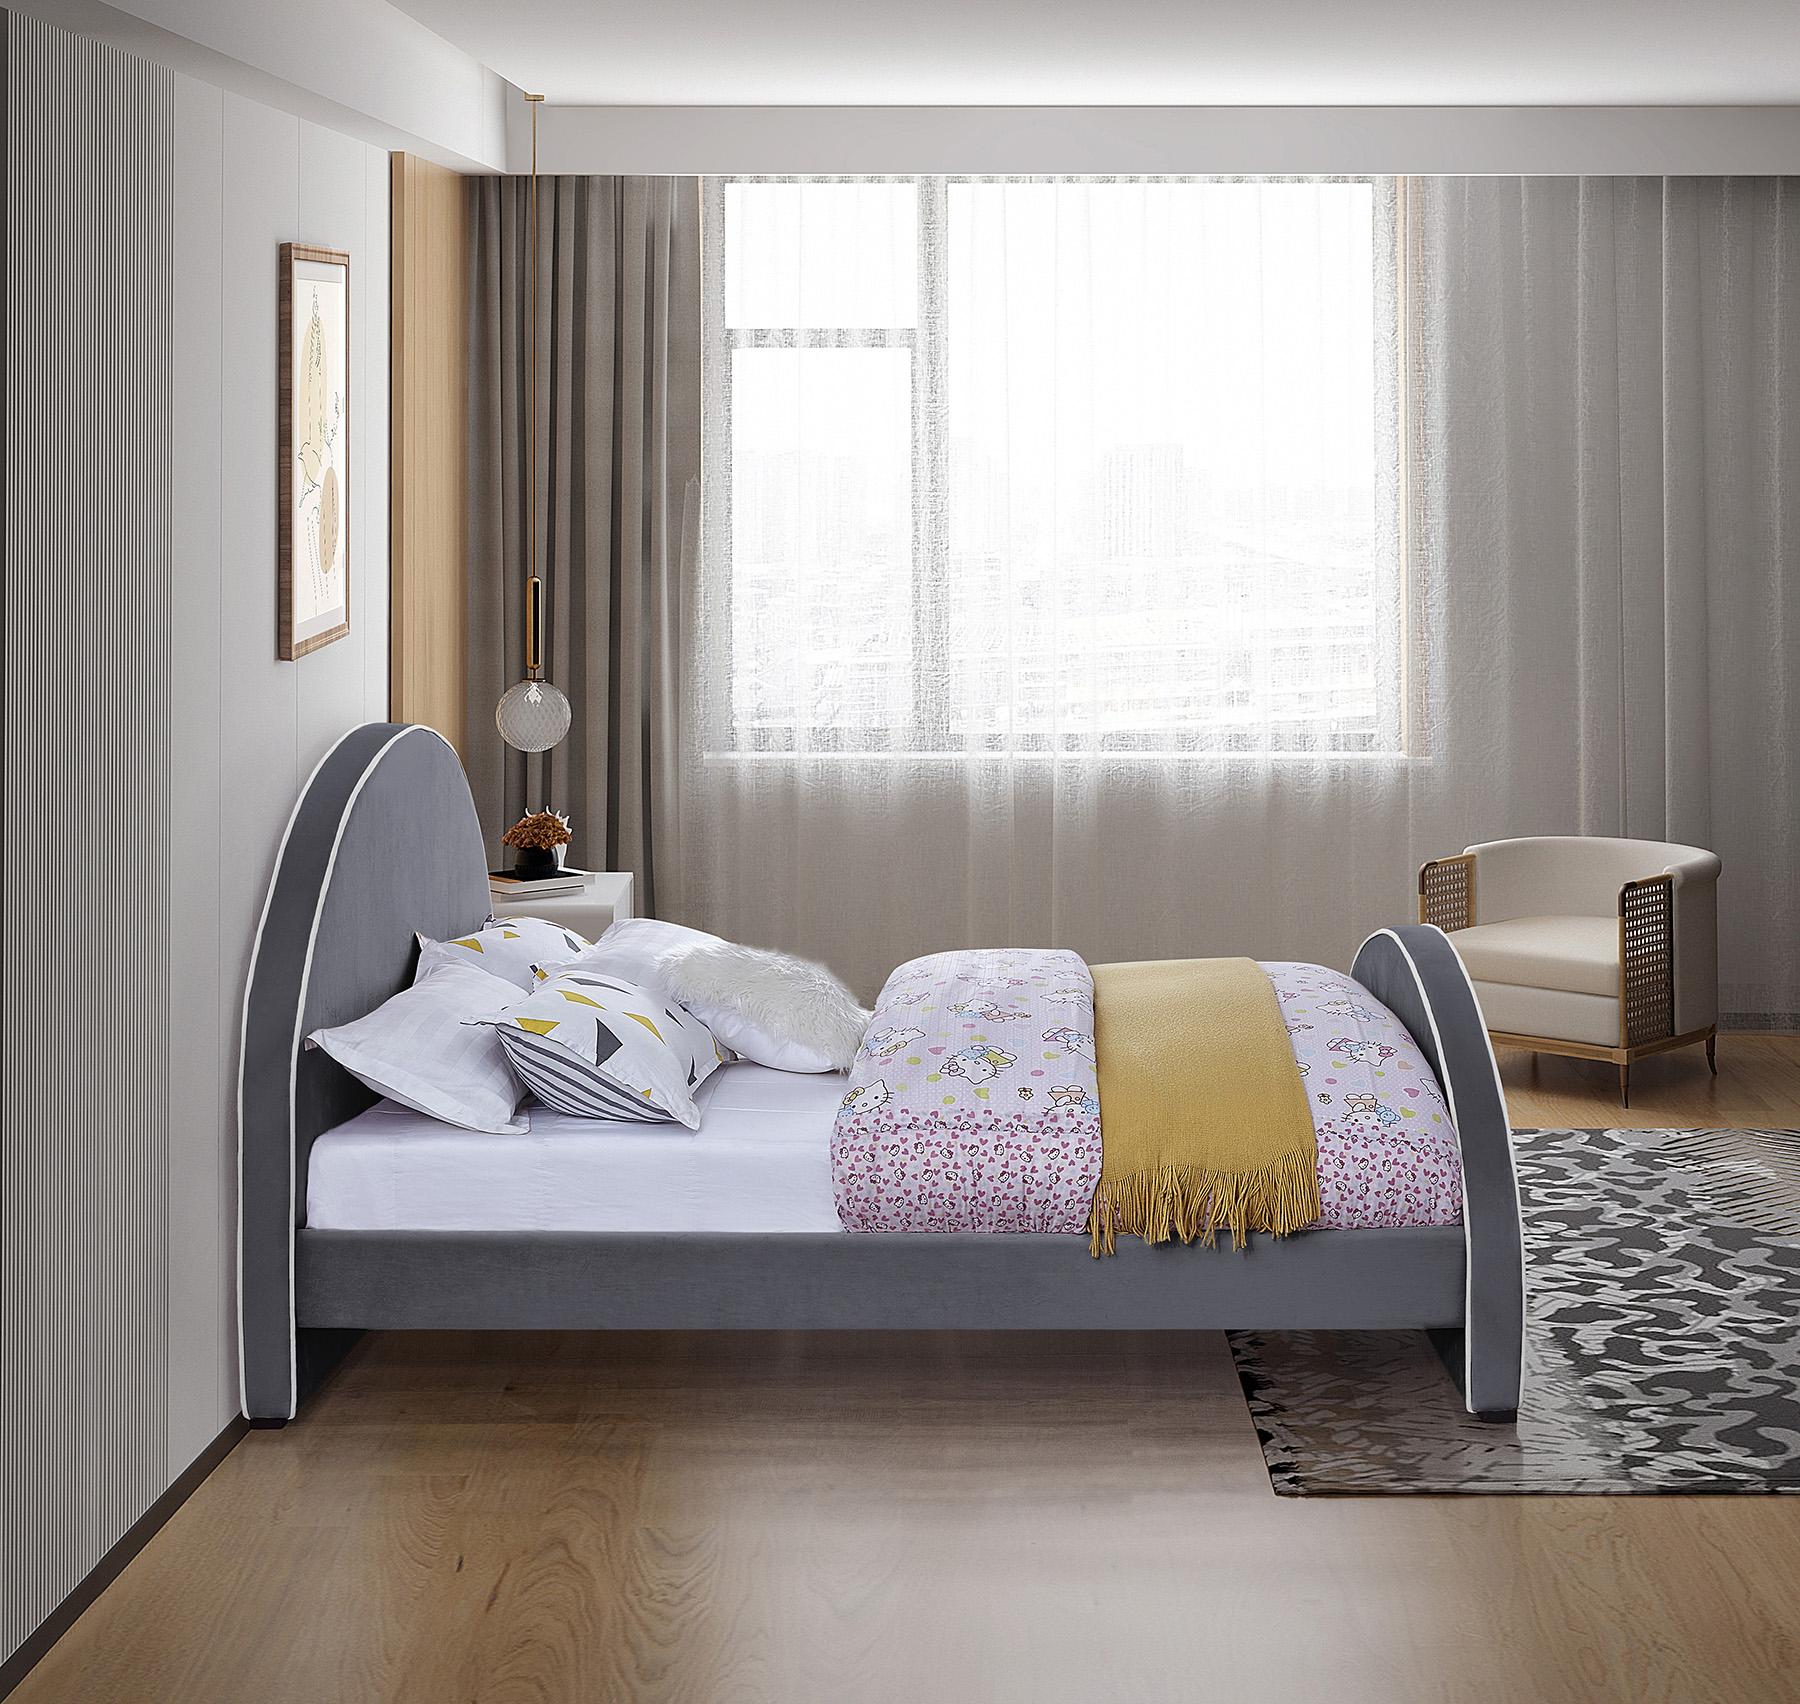 

    
BrodyGrey-F Meridian Furniture Platform Bed
